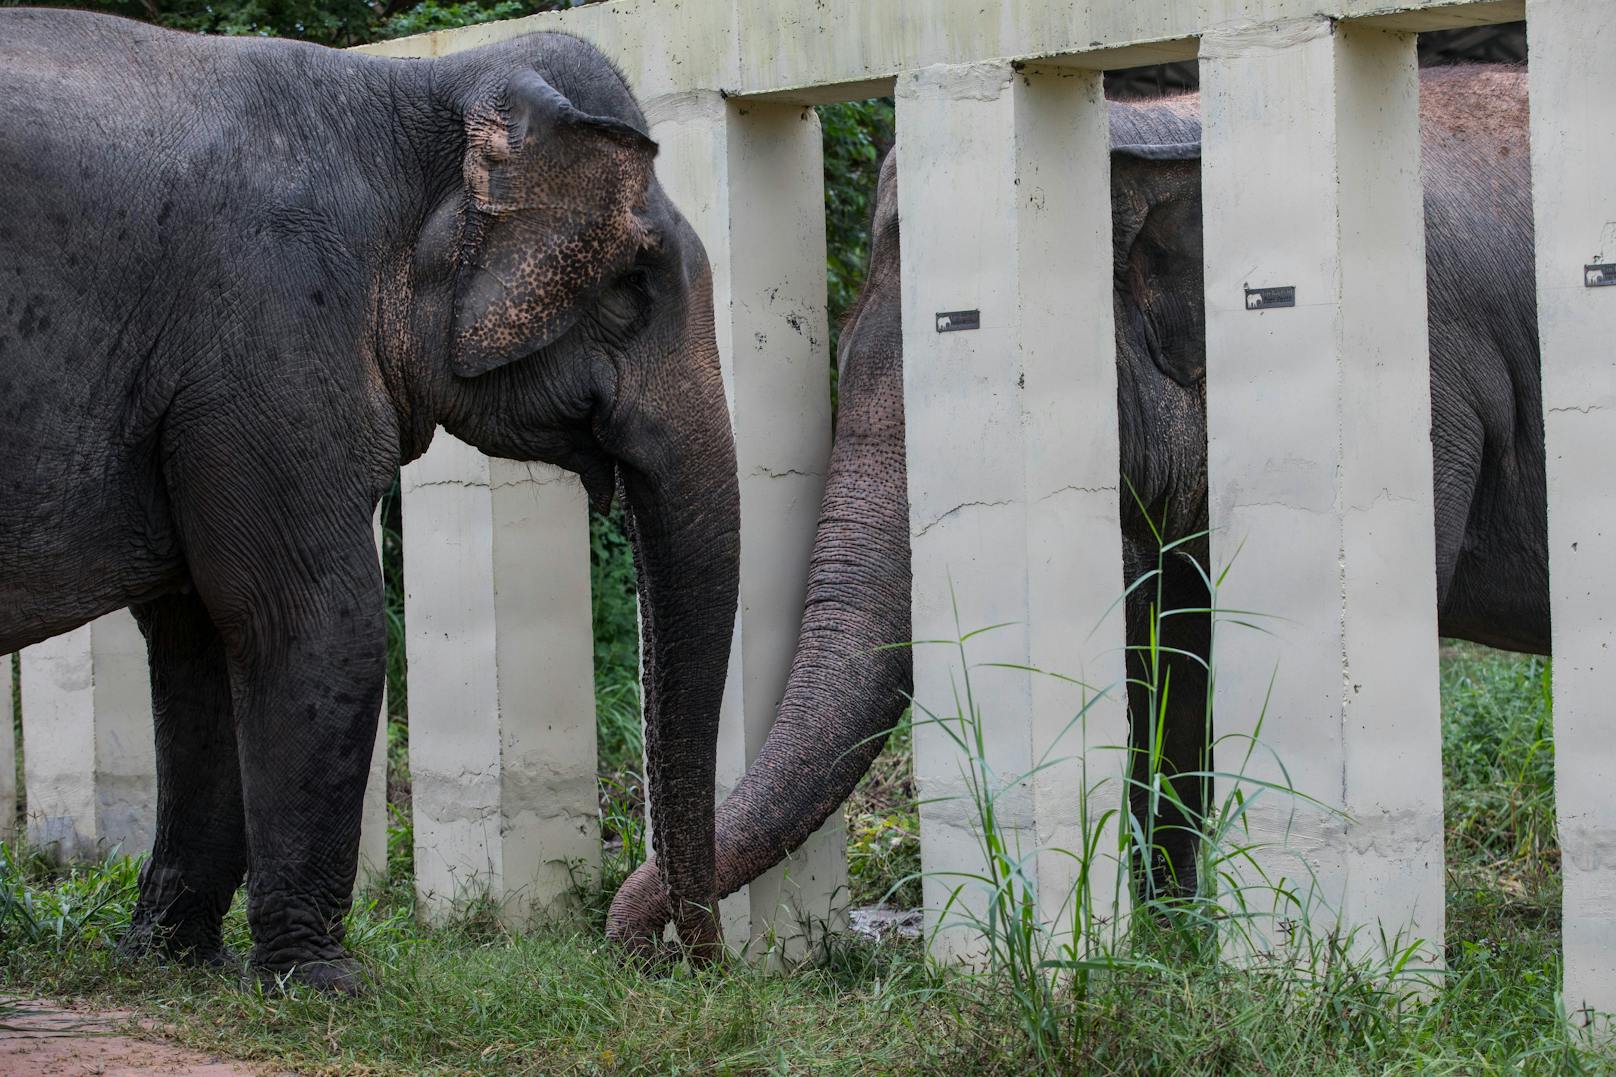 Vor seiner Rettung lebte der 36-jährige Kaavan acht Jahre lang allein und war als der "einsamster Elefant der Welt" bekannt